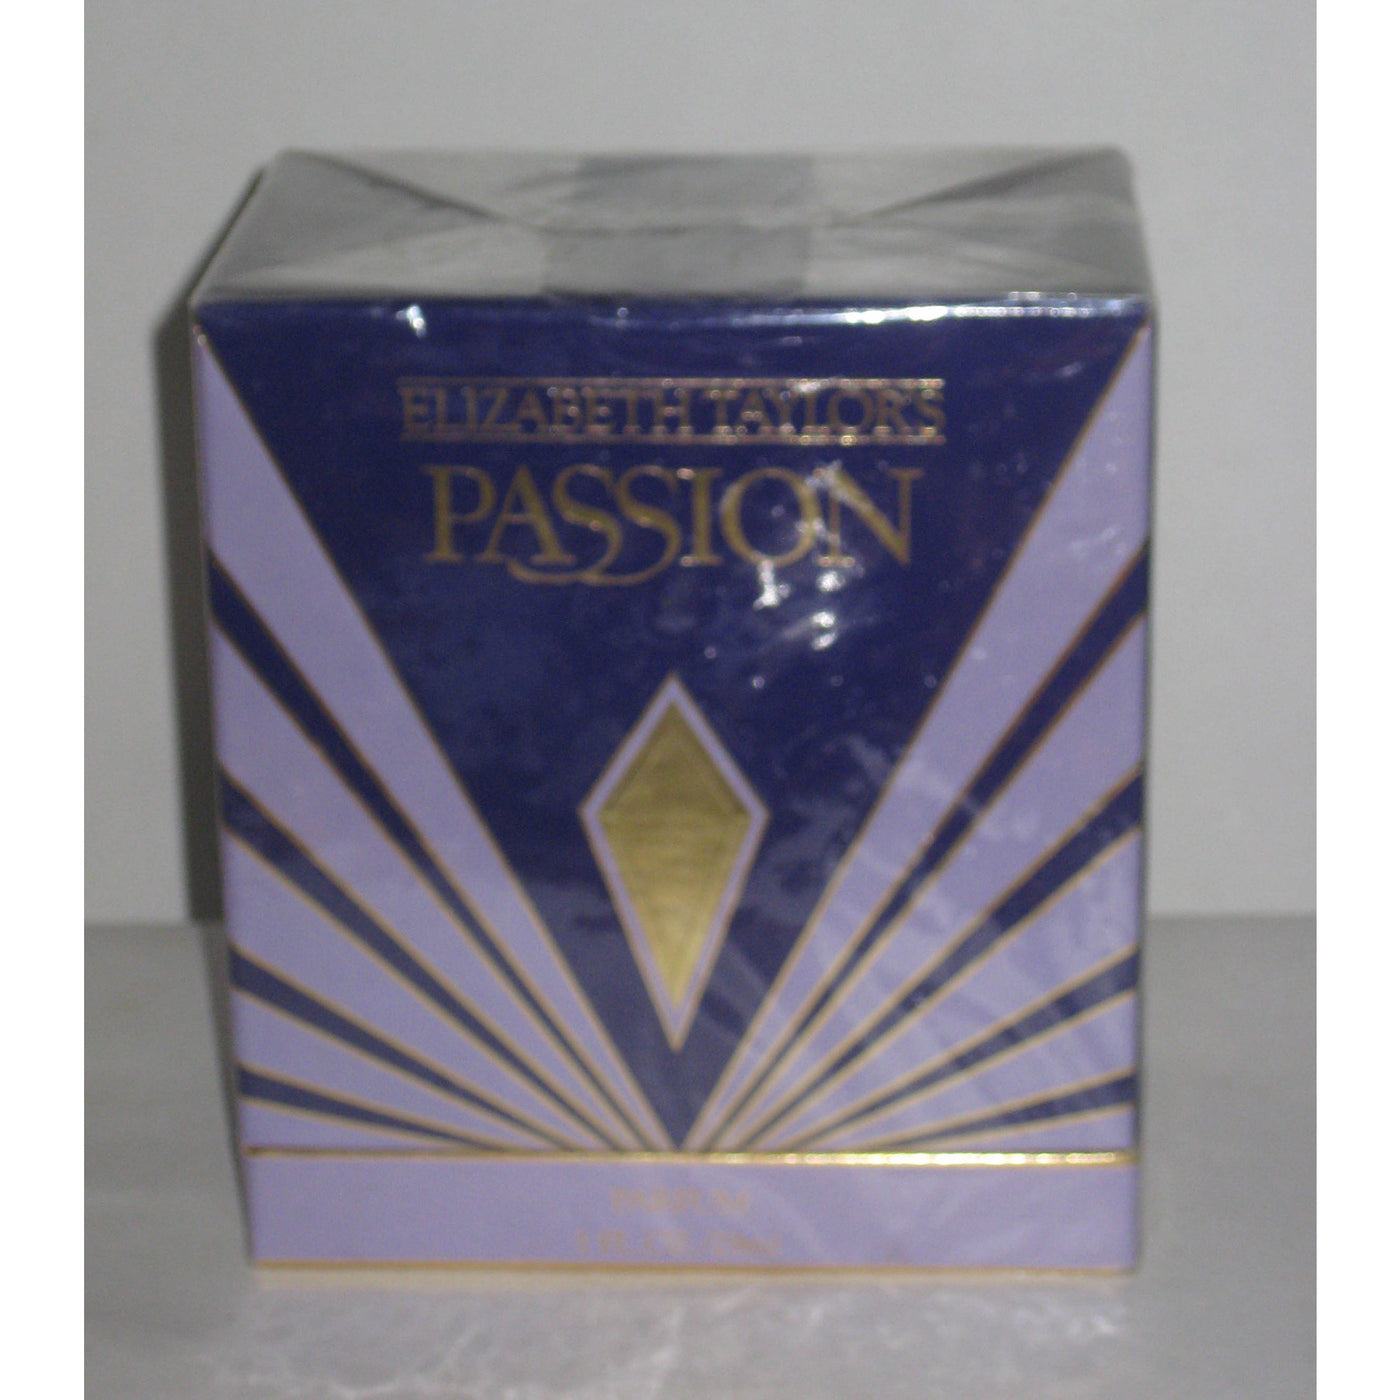 Vintage Elizabeth Taylor Passion Parfum